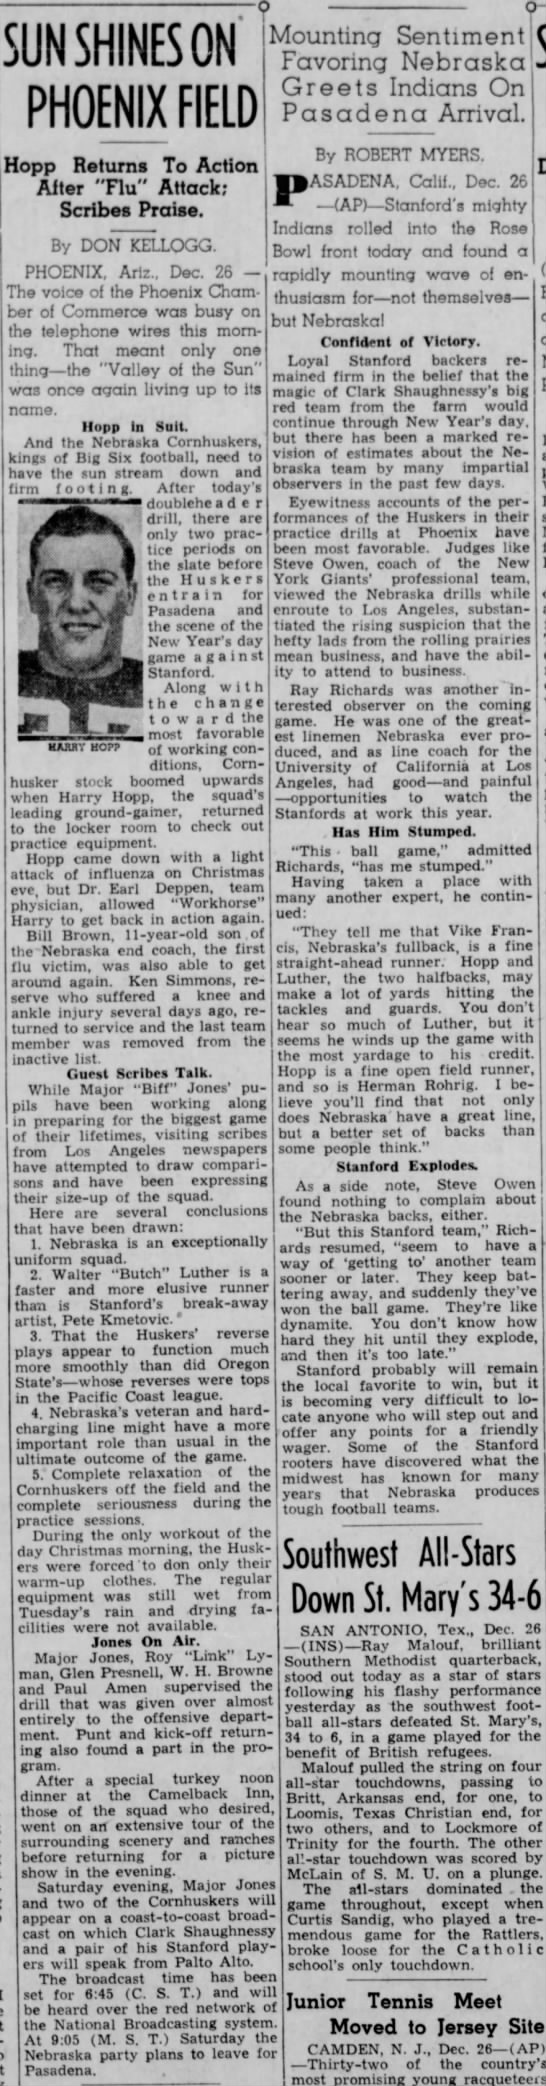 1940 Nebraska Rose Bowl practices in Phoenix - 